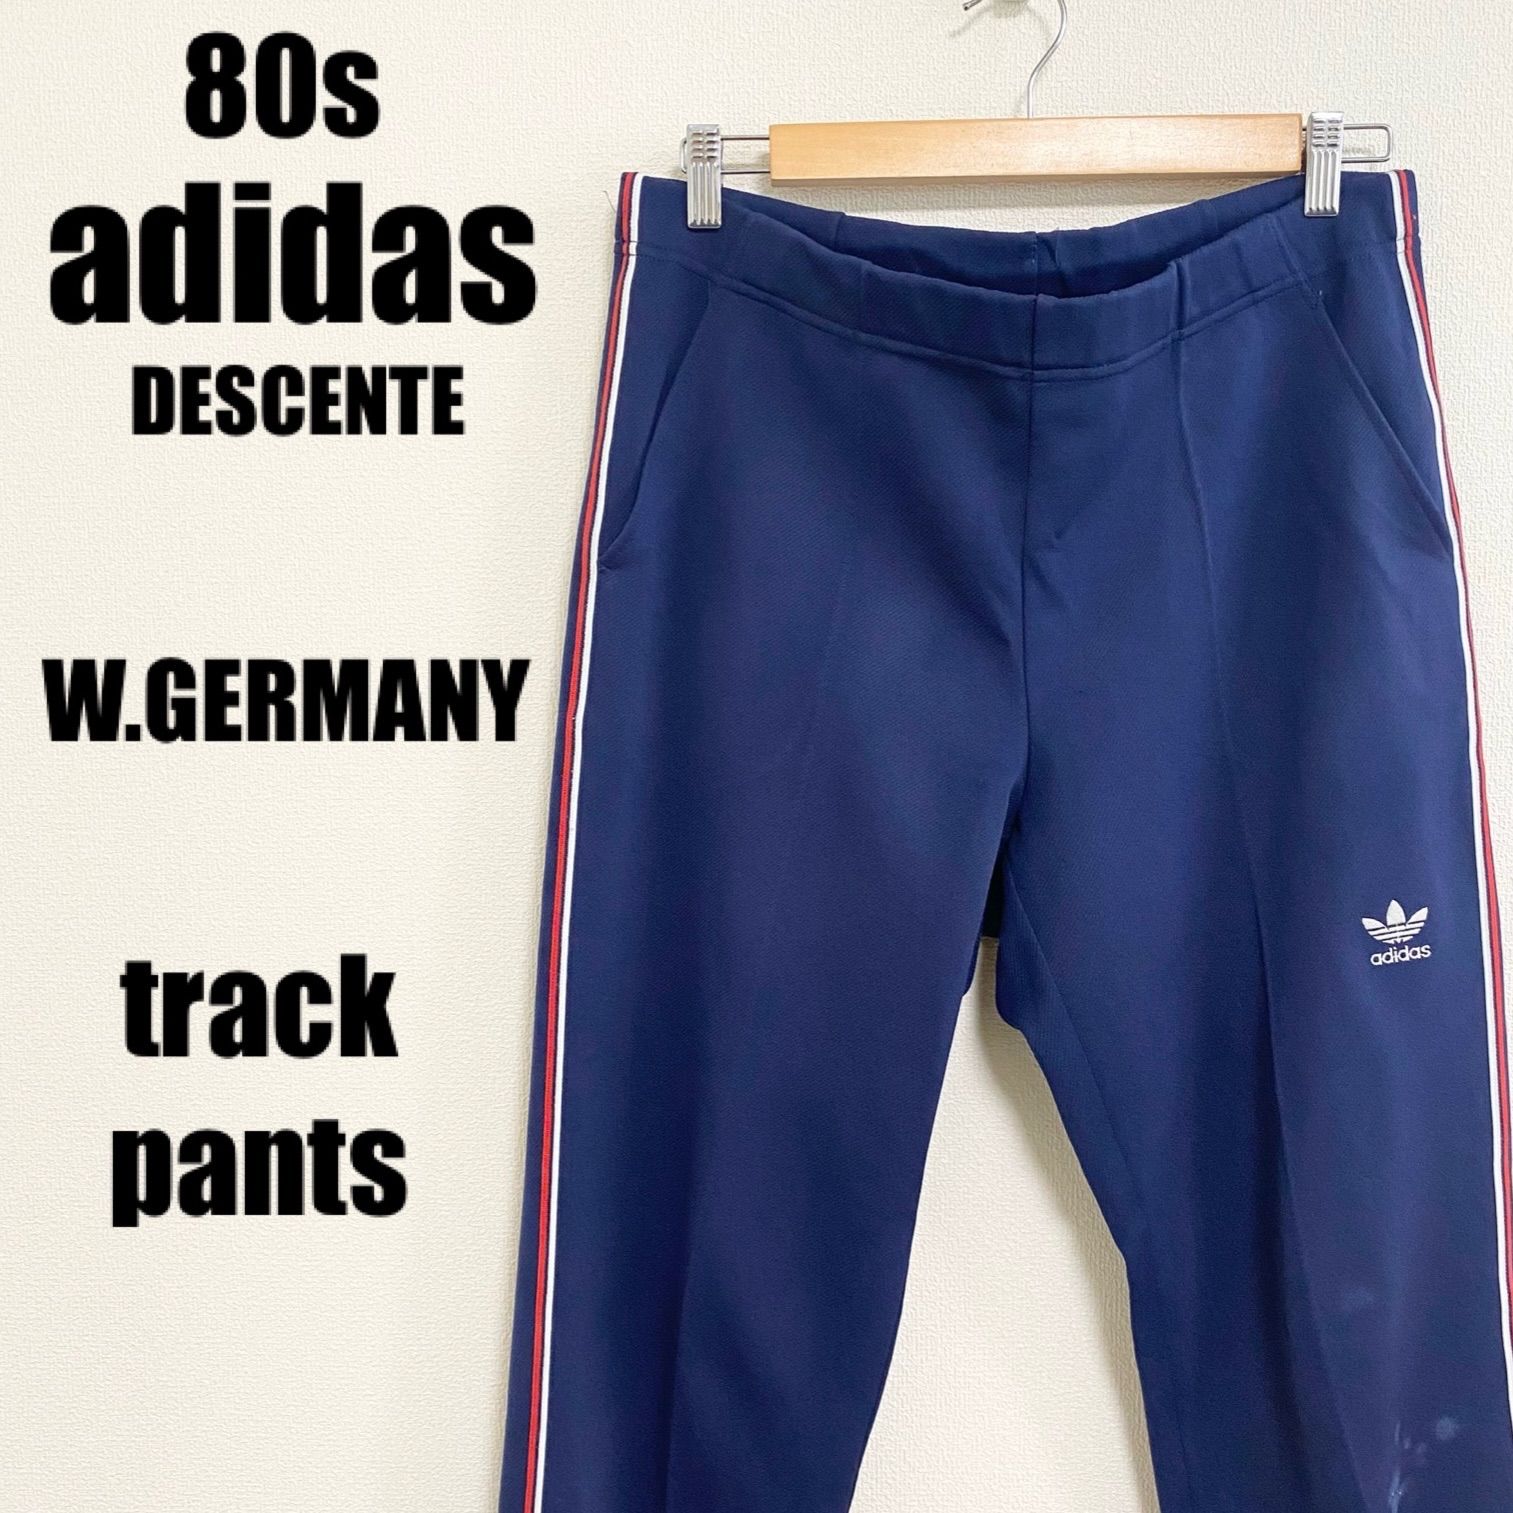 80s アディダス 西ドイツ デサント トラックパンツ ジャージ下 ATS198 メンズ XLサイズ adidas  DESCENTE track pants 刺繍 トレフォイル メルカリShops